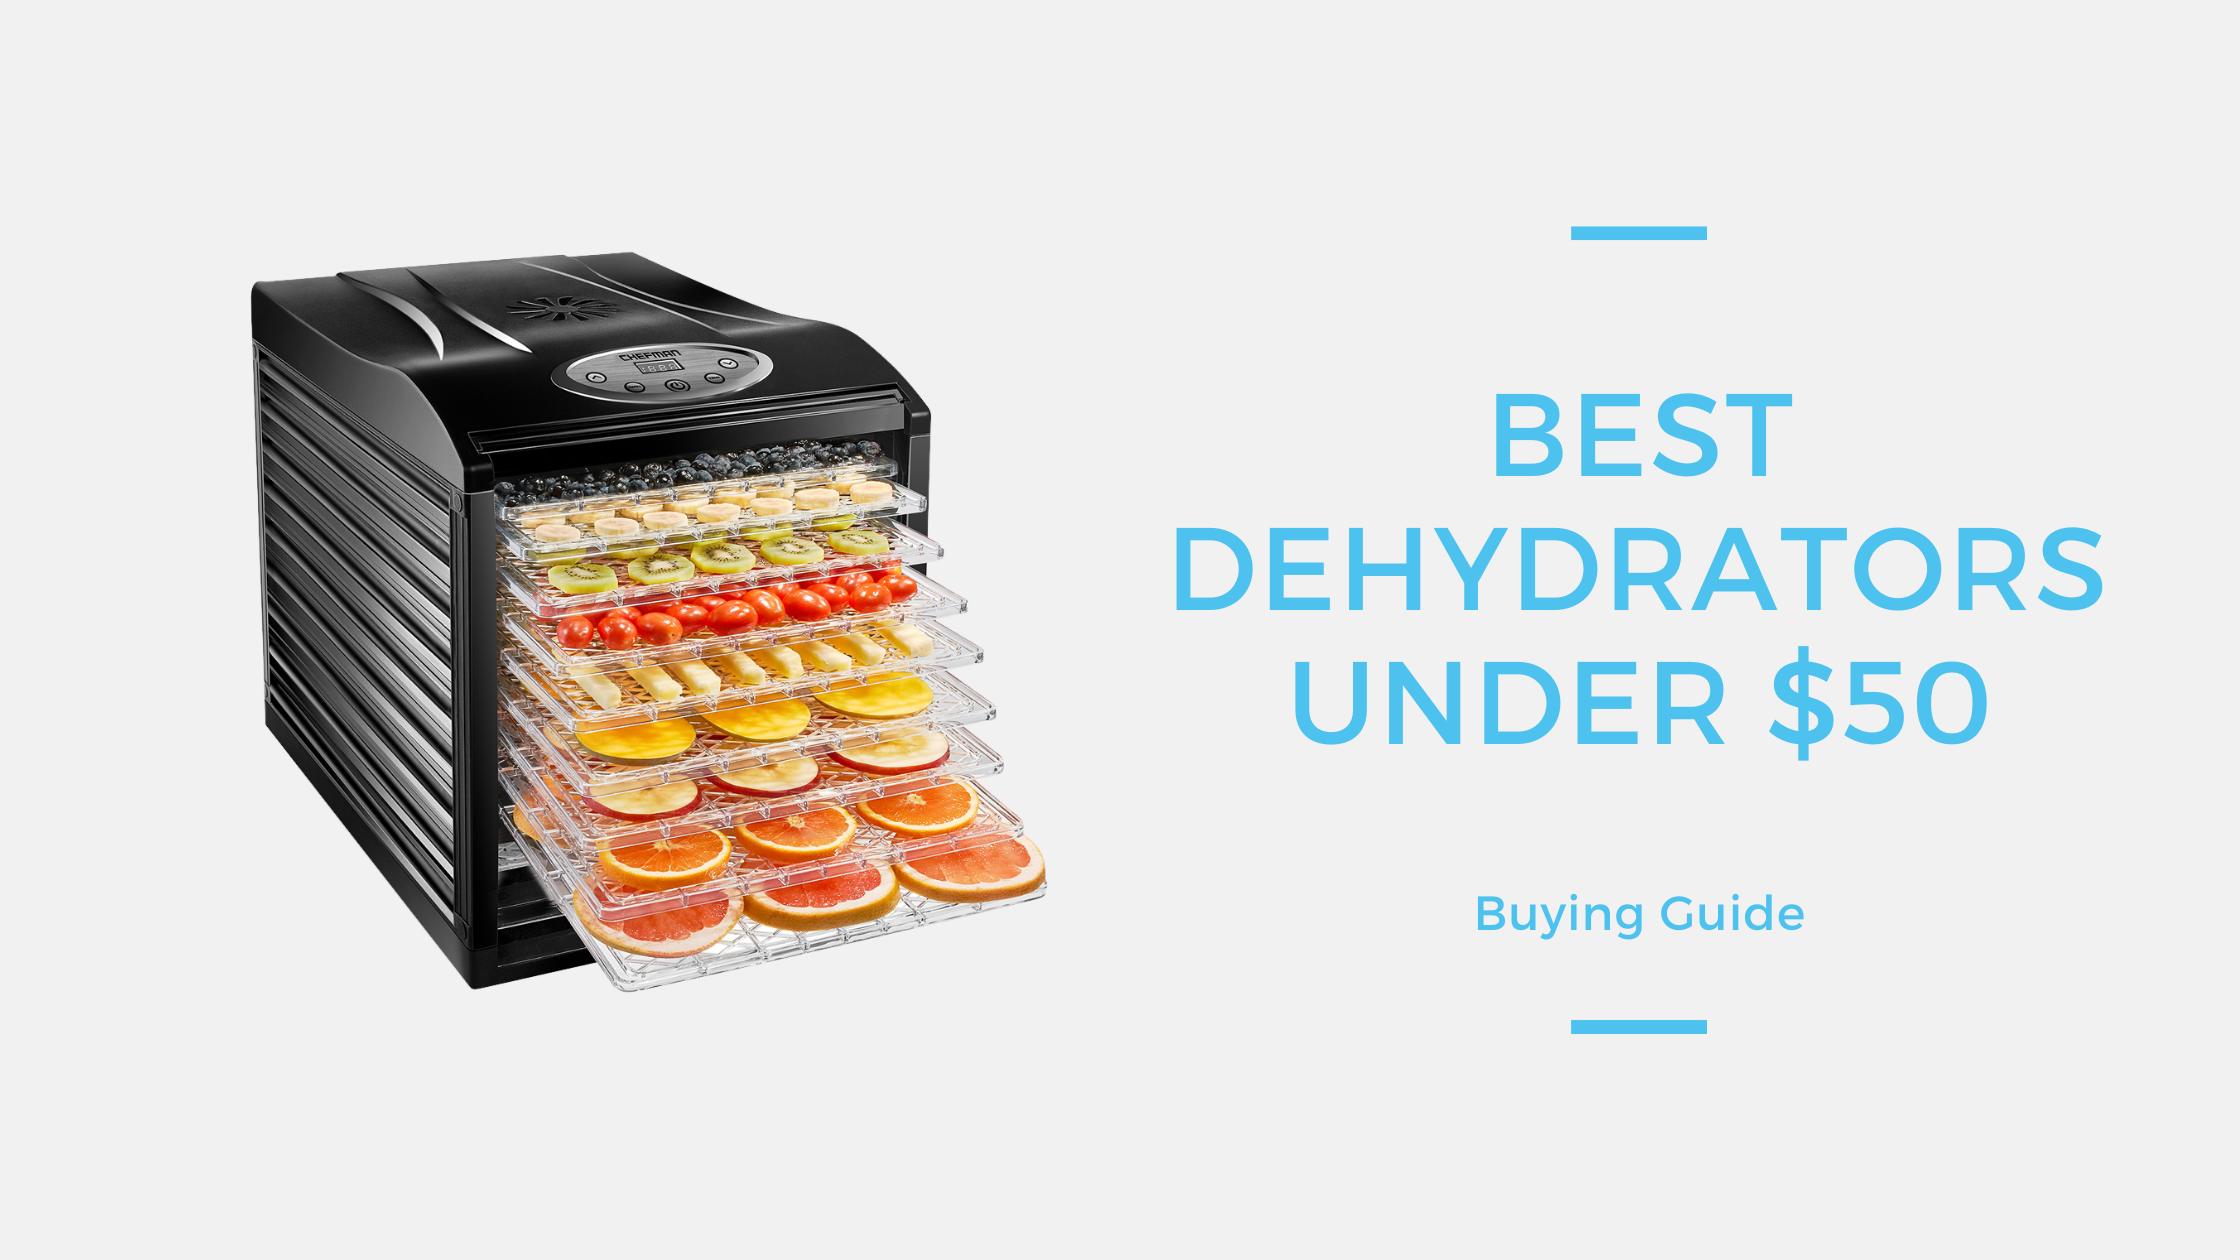 Best Dehydrators under $50